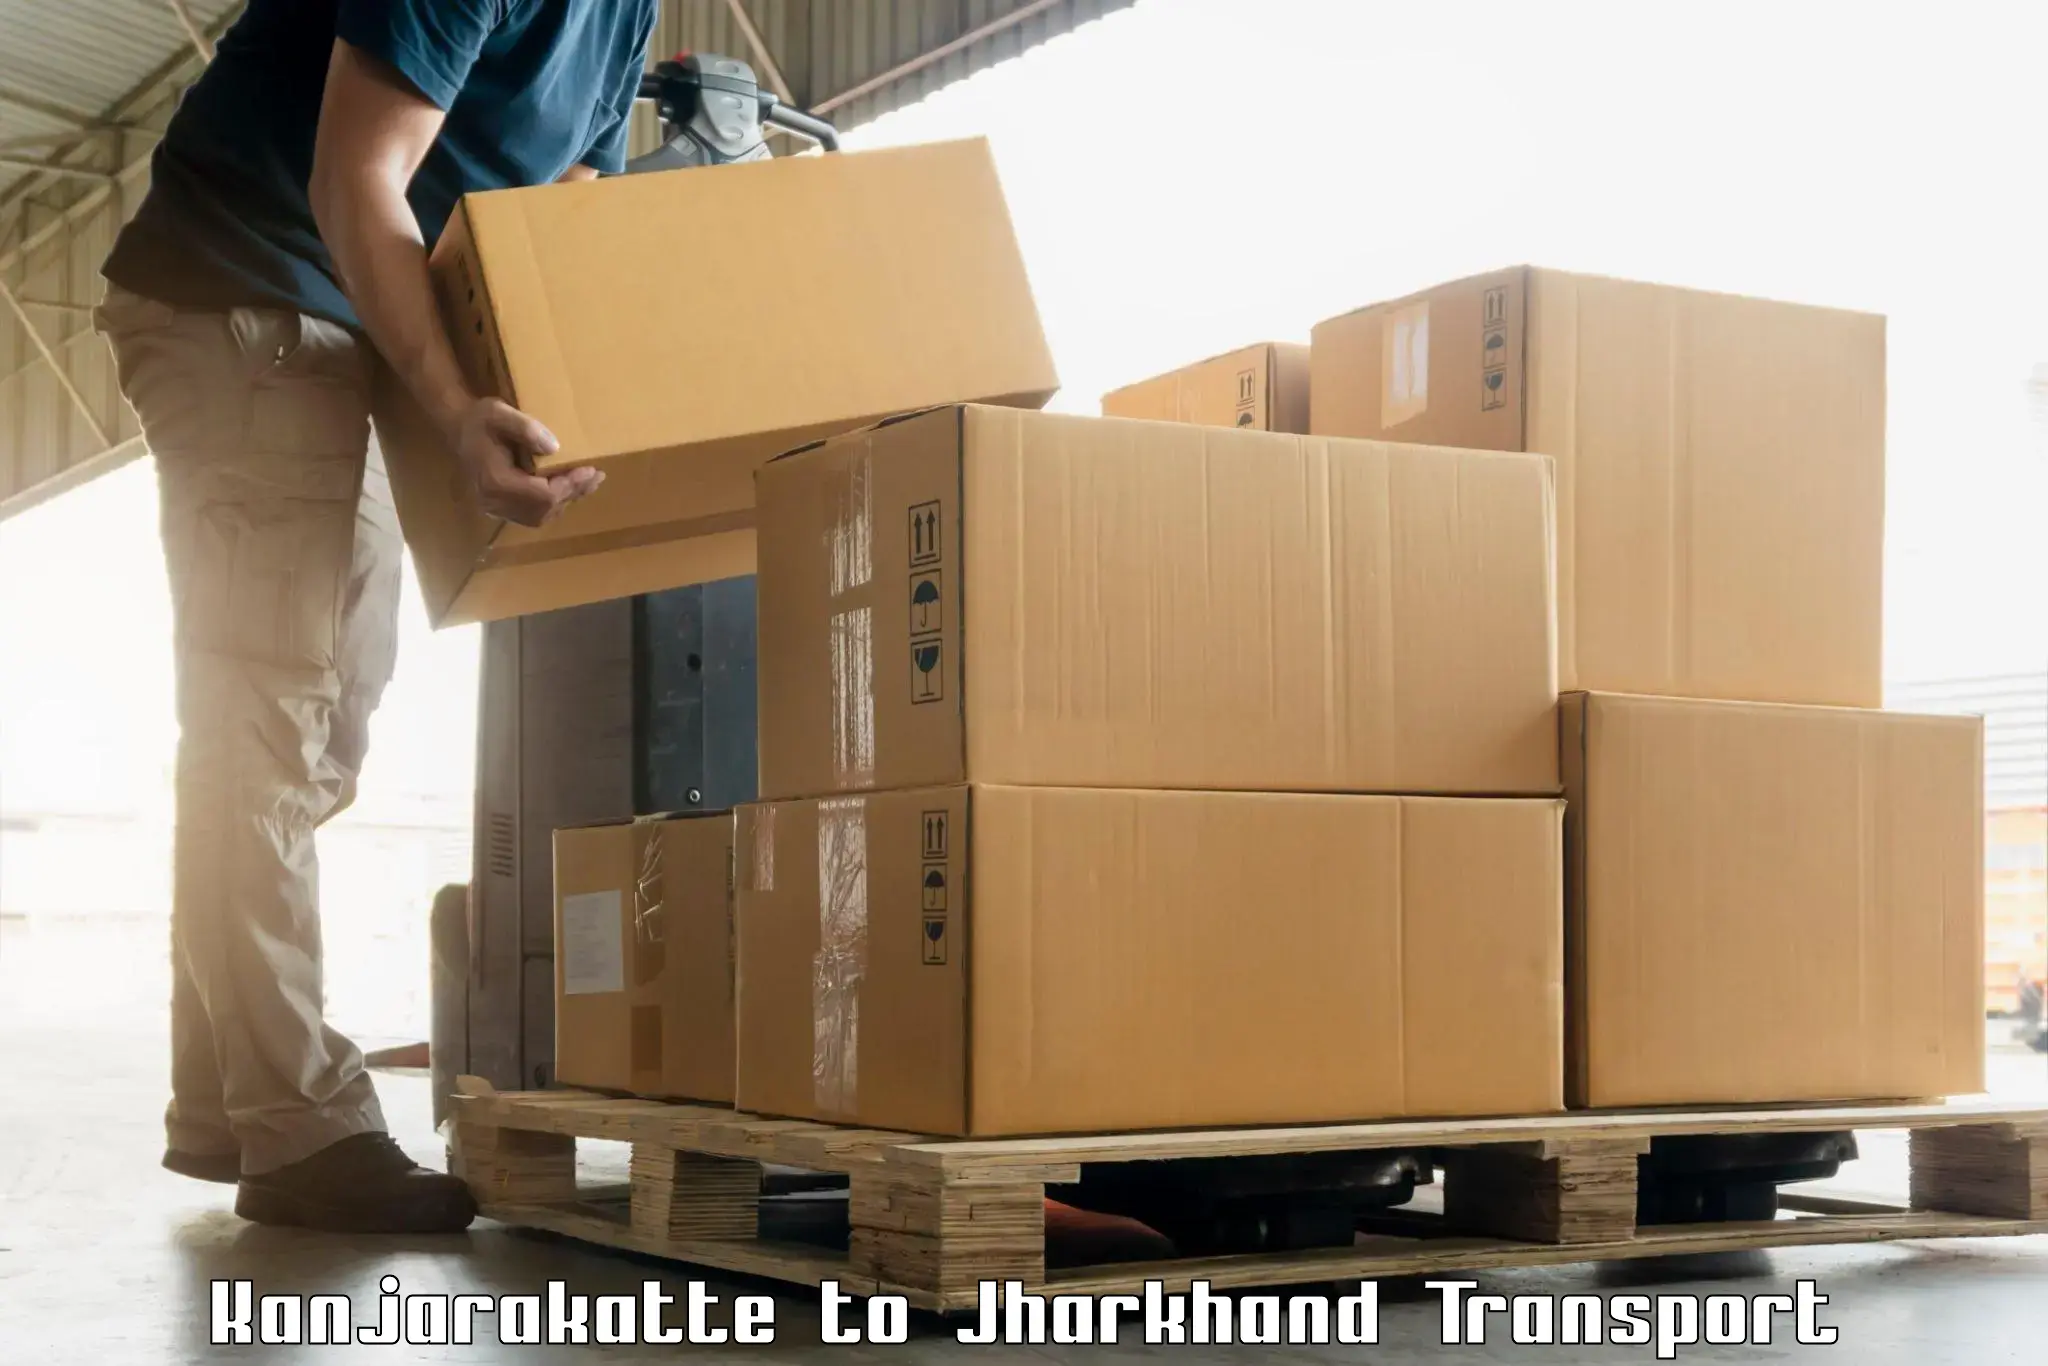 Daily parcel service transport Kanjarakatte to Ghormara